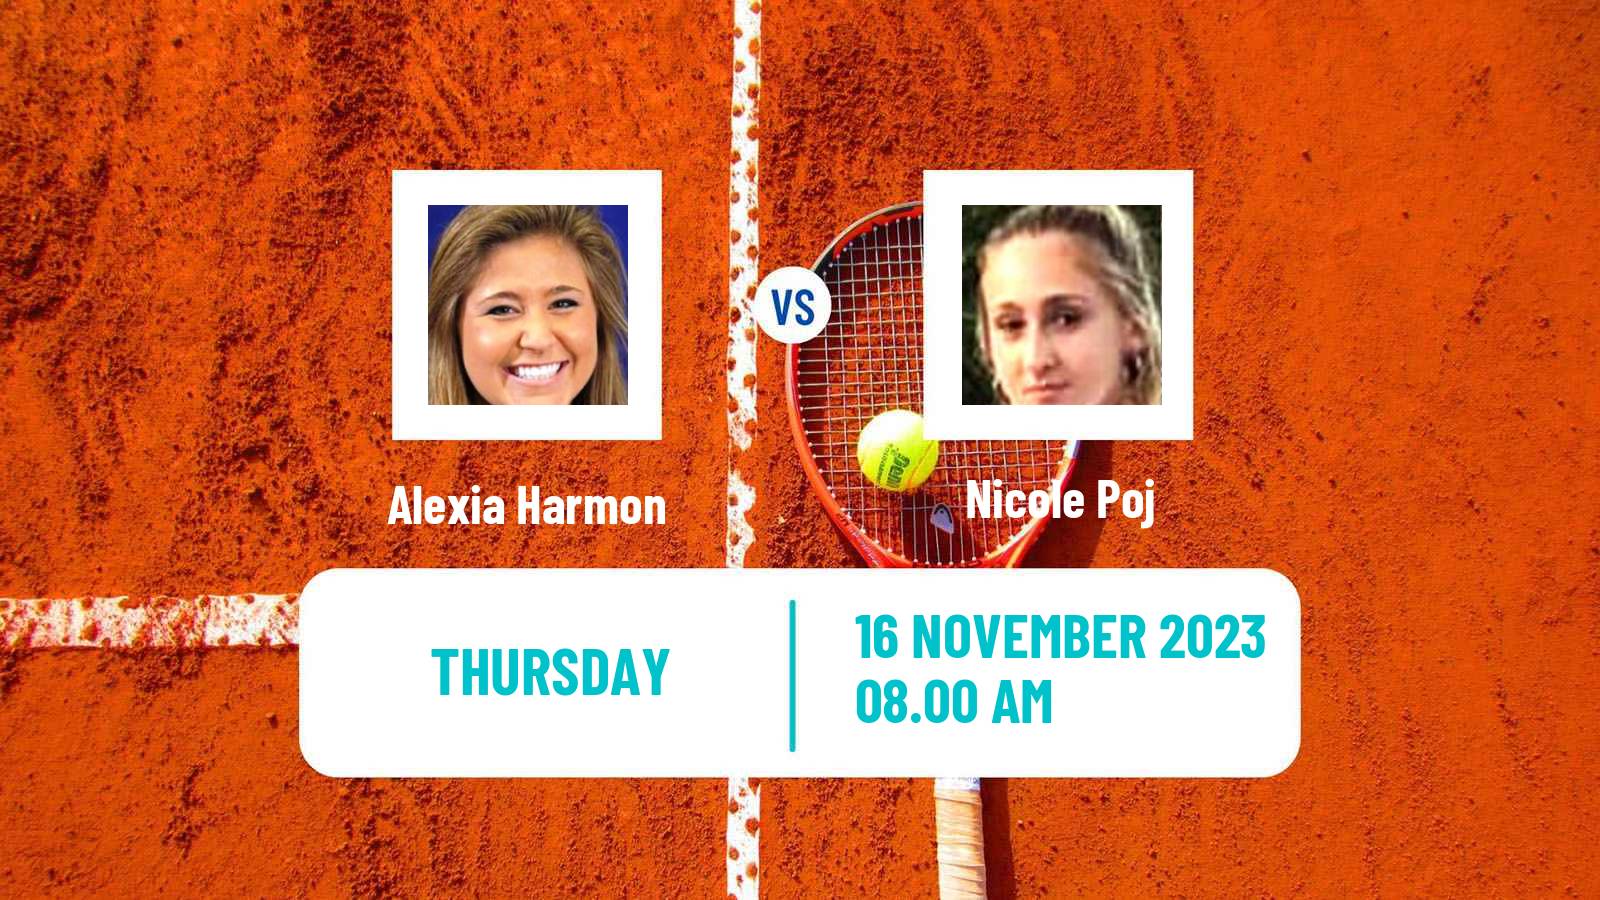 Tennis ITF W15 Buenos Aires 2 Women Alexia Harmon - Nicole Poj